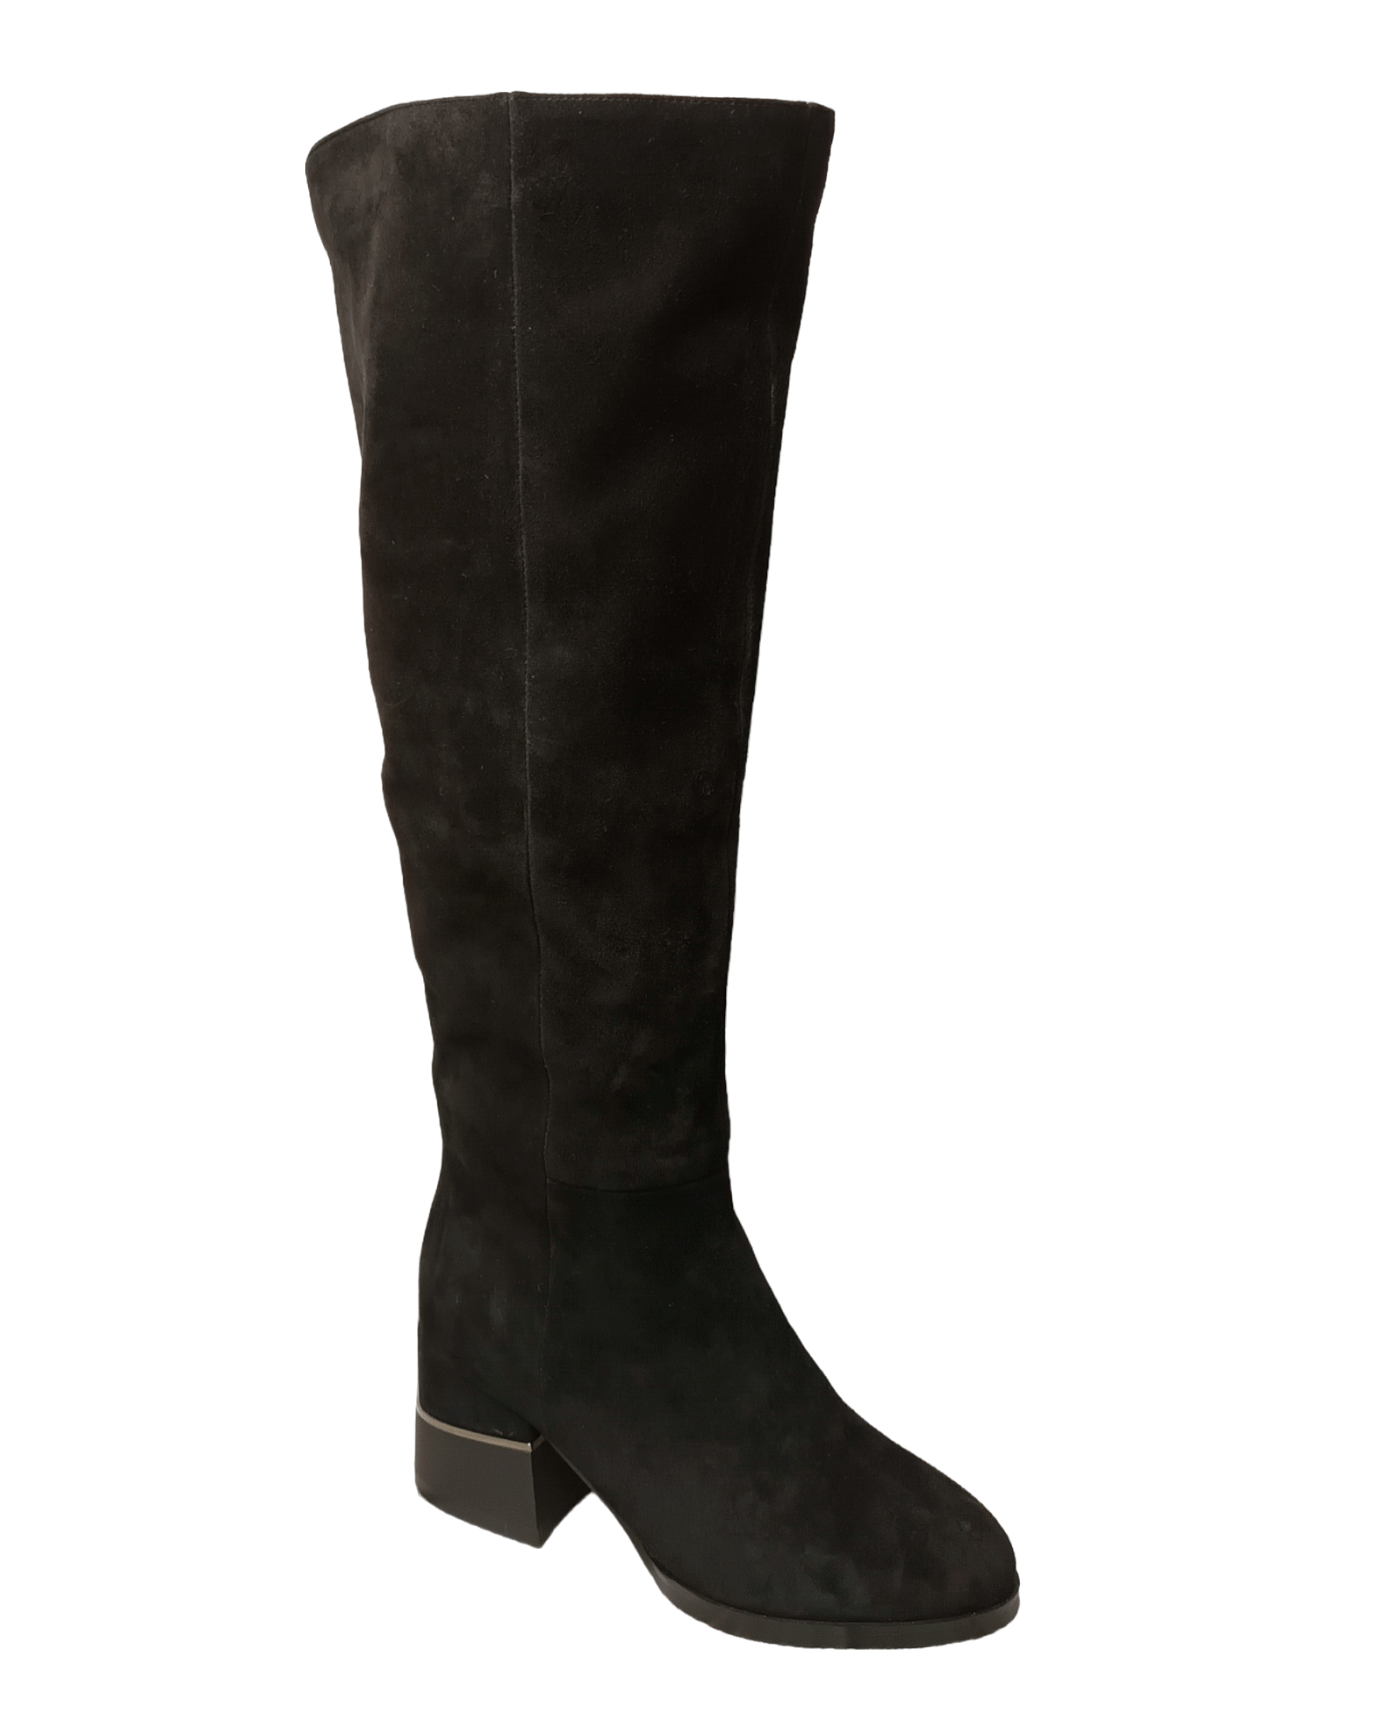 Сапоги высокие женские зимние замшевые черные Z232-7